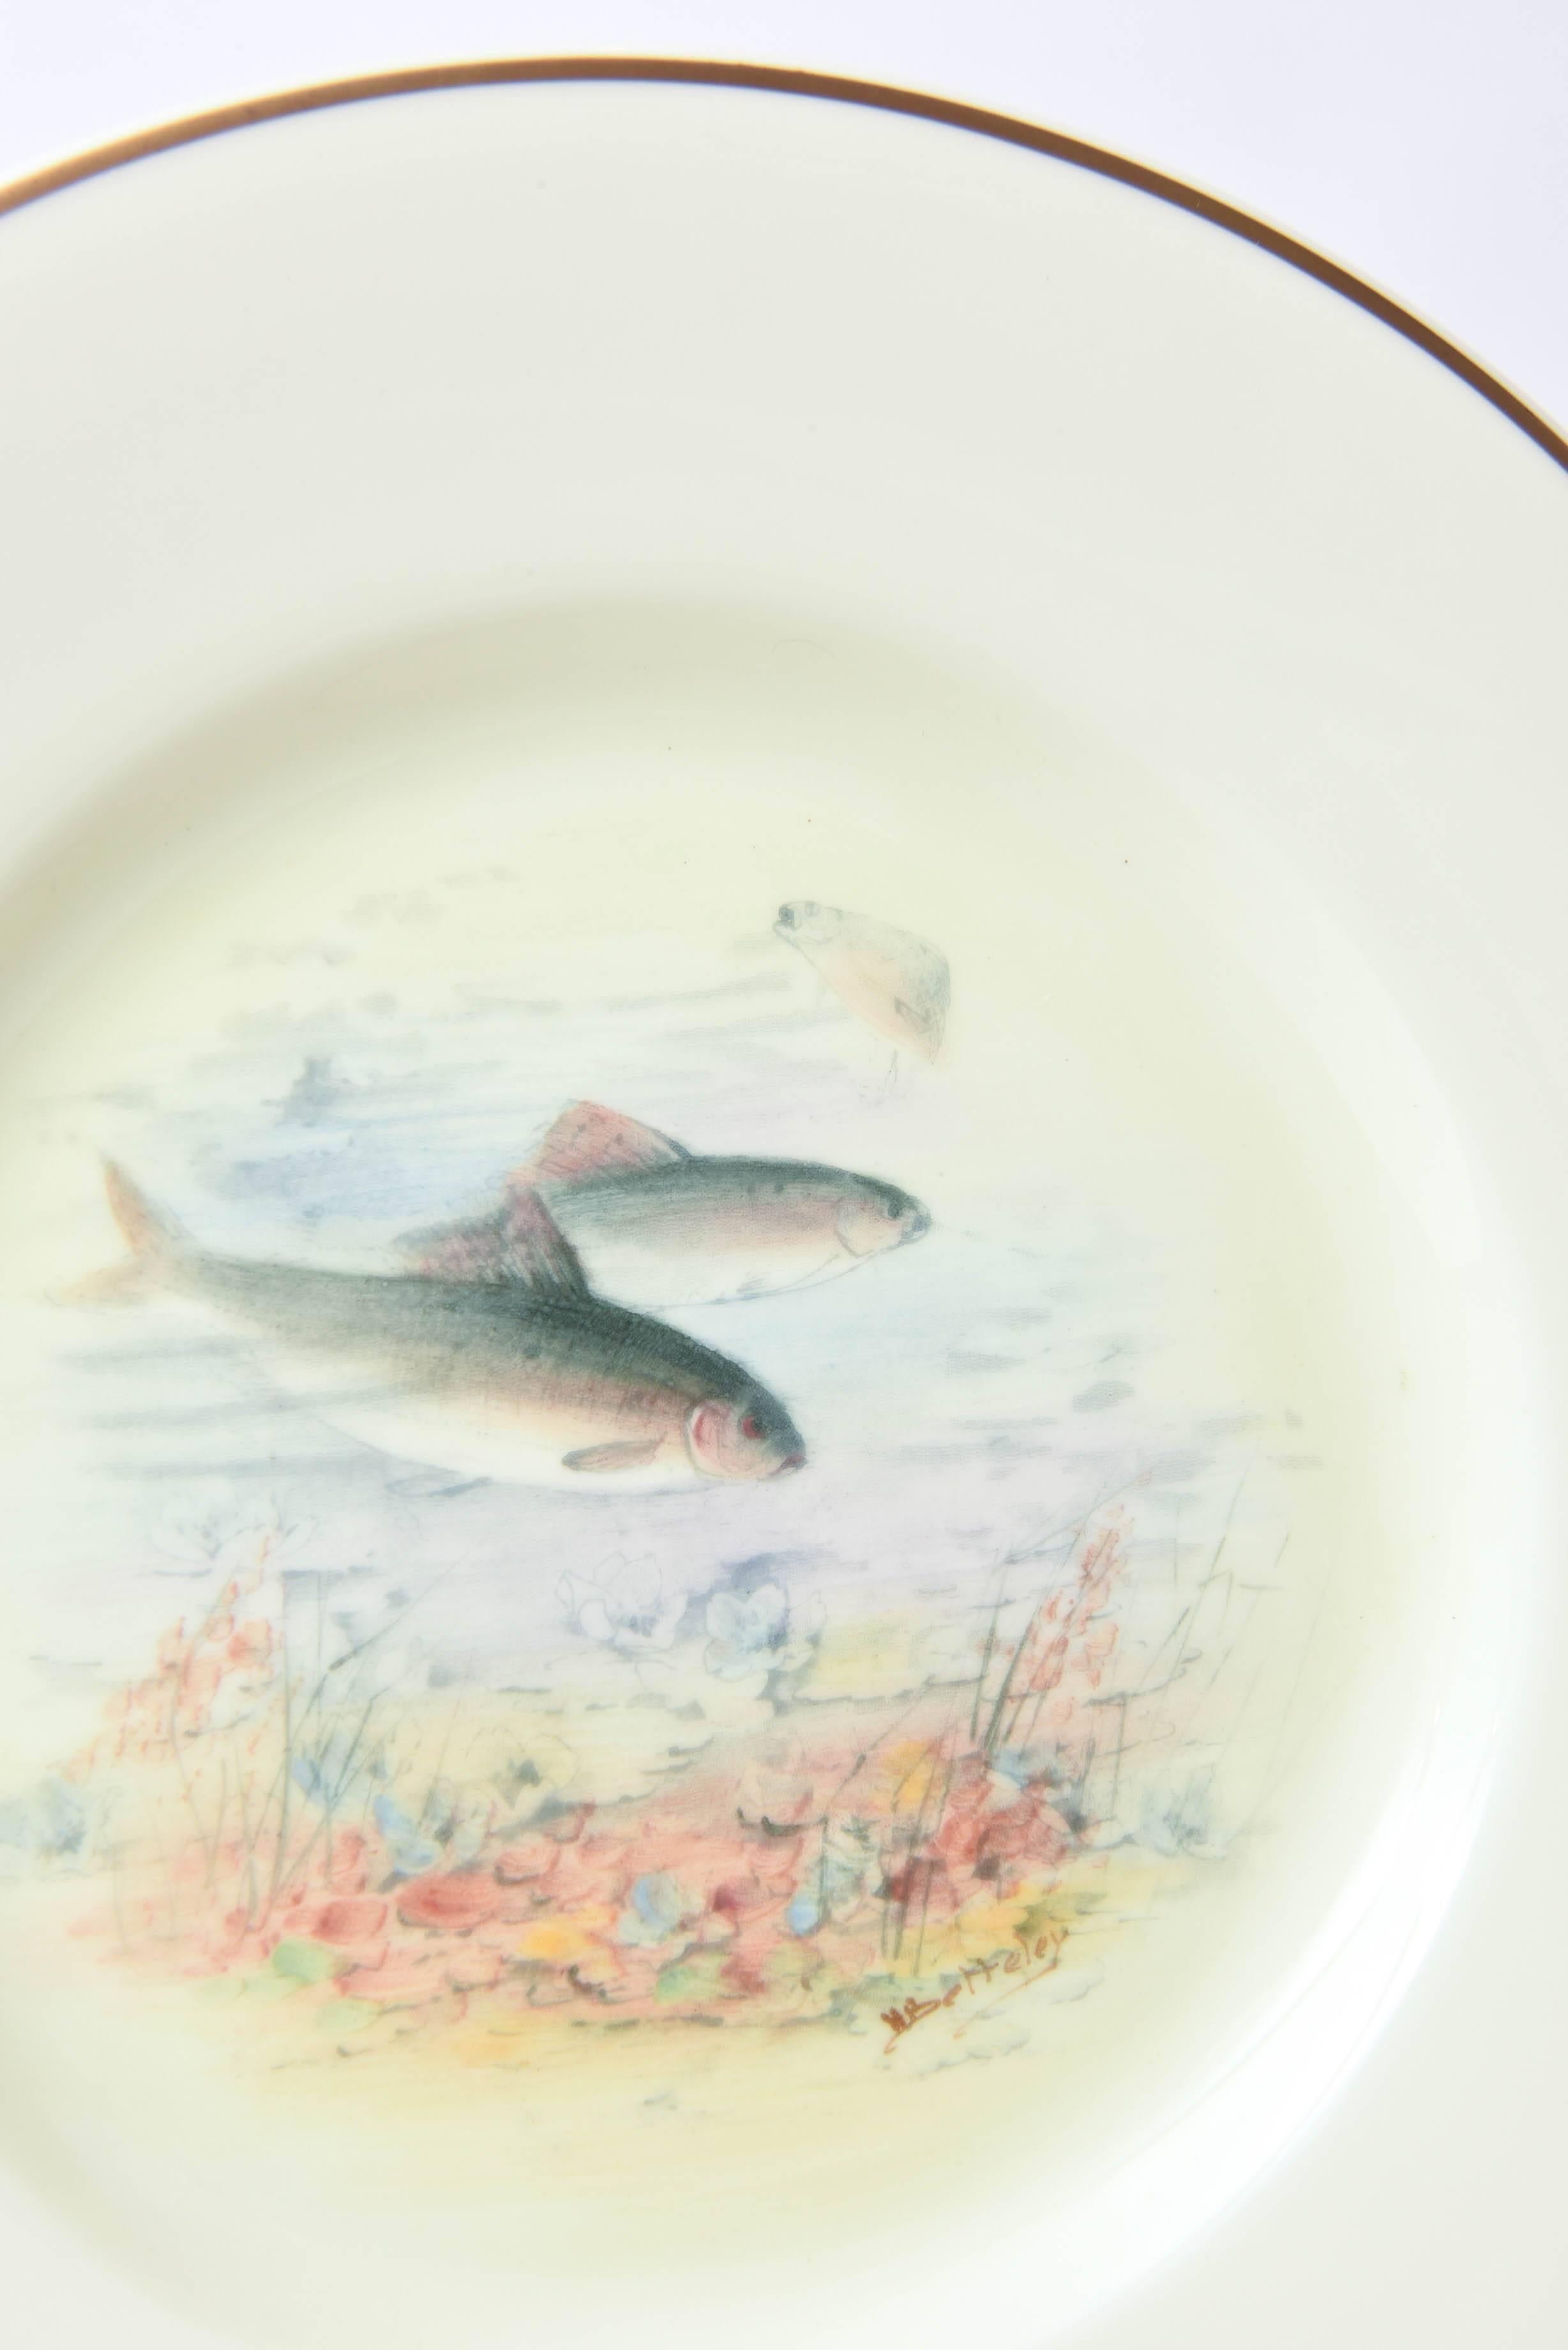 antique fish plates